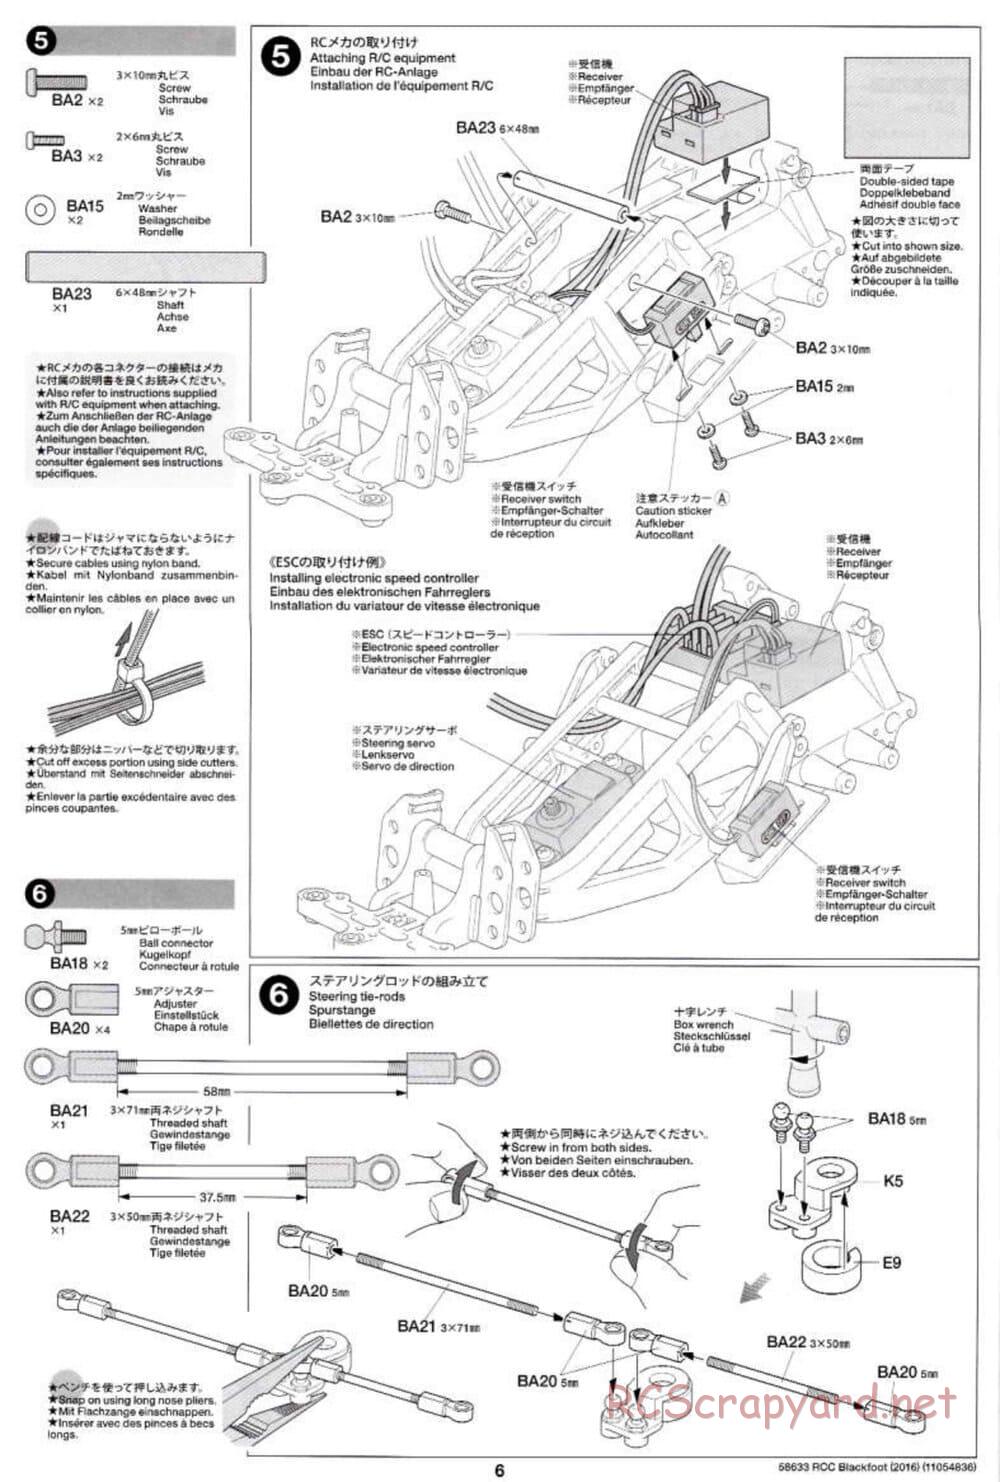 Tamiya - Blackfoot 2016 - ORV Chassis - Manual - Page 6